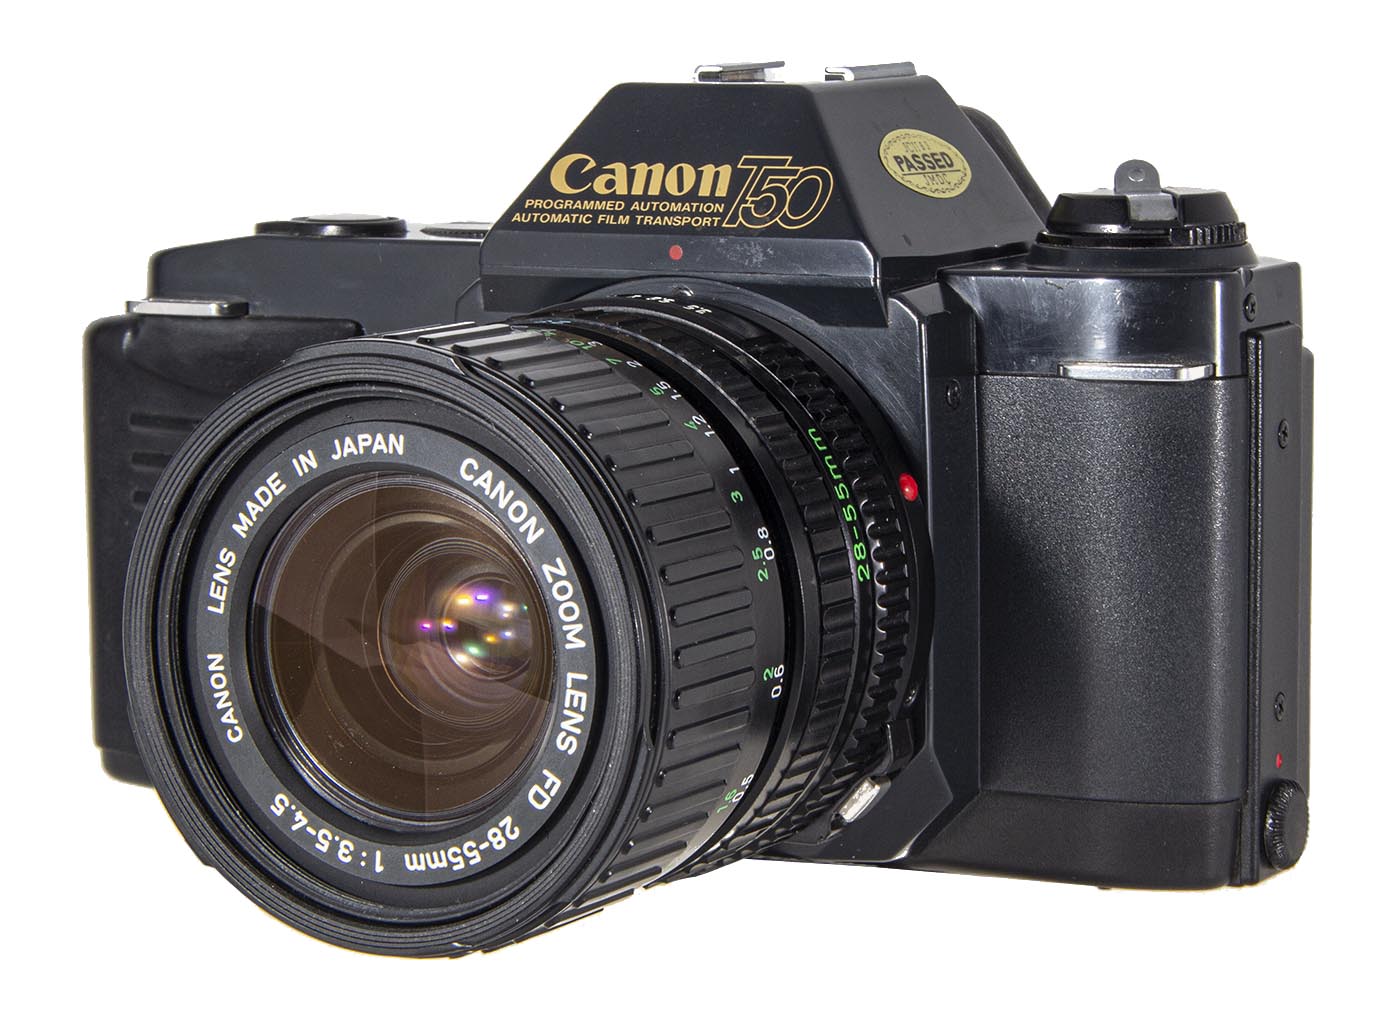 Canon FDn 28-55mm lens